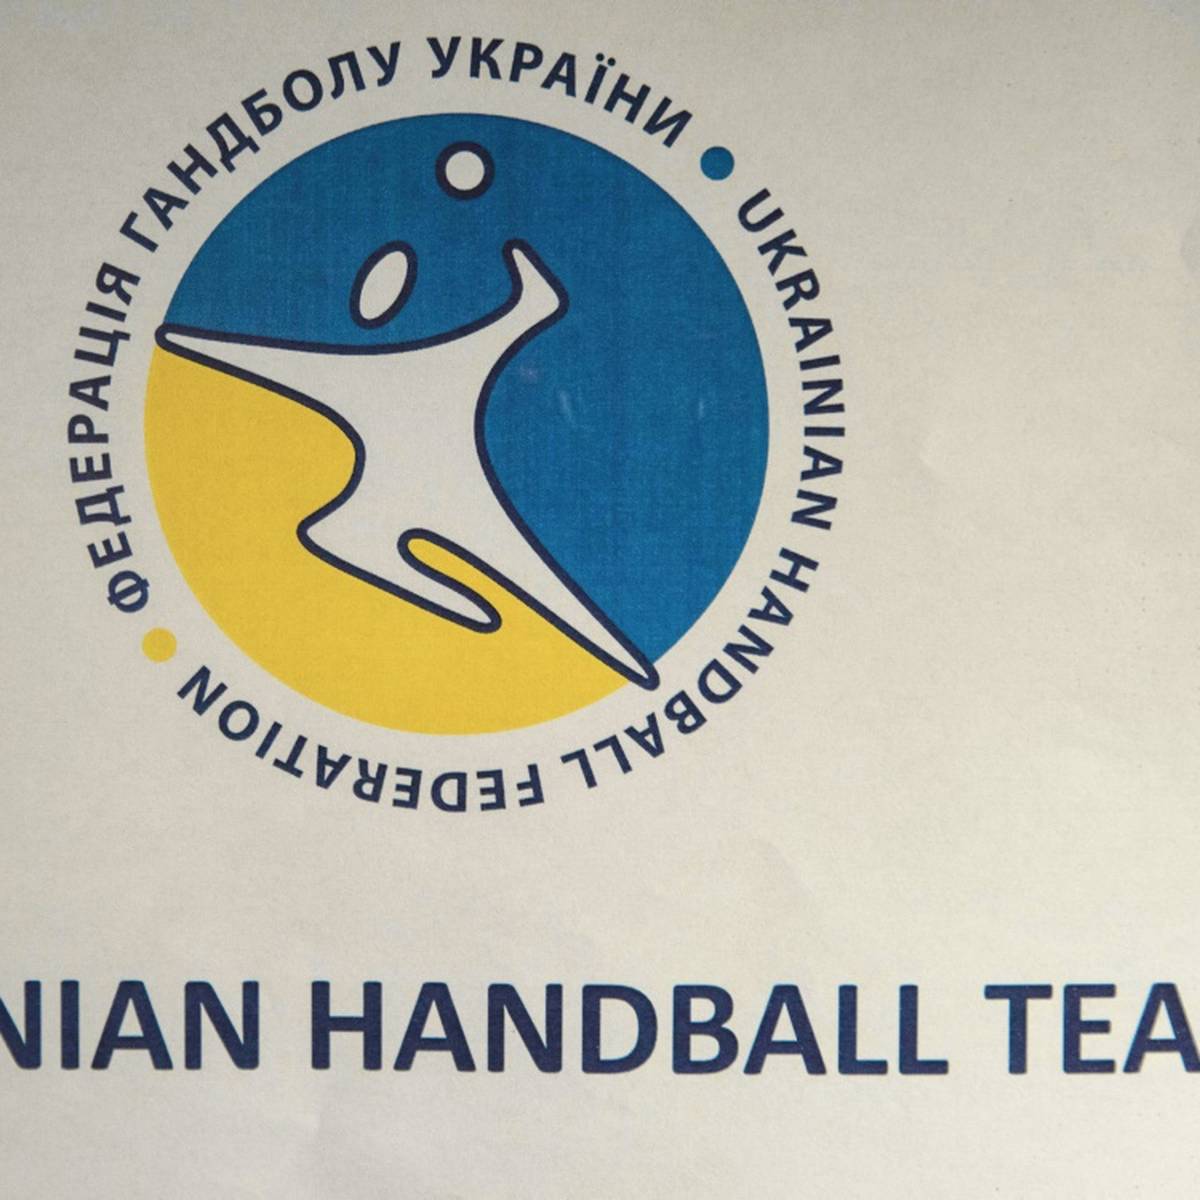 Der ukrainische Klub HK Motor Saporoschje darf sich bei seinem Debüt in der 2. Handball-Bundesliga auf Unterstützung aus der Heimat freuen. Ukrainische Fans erhalten kostenlos Tickets.